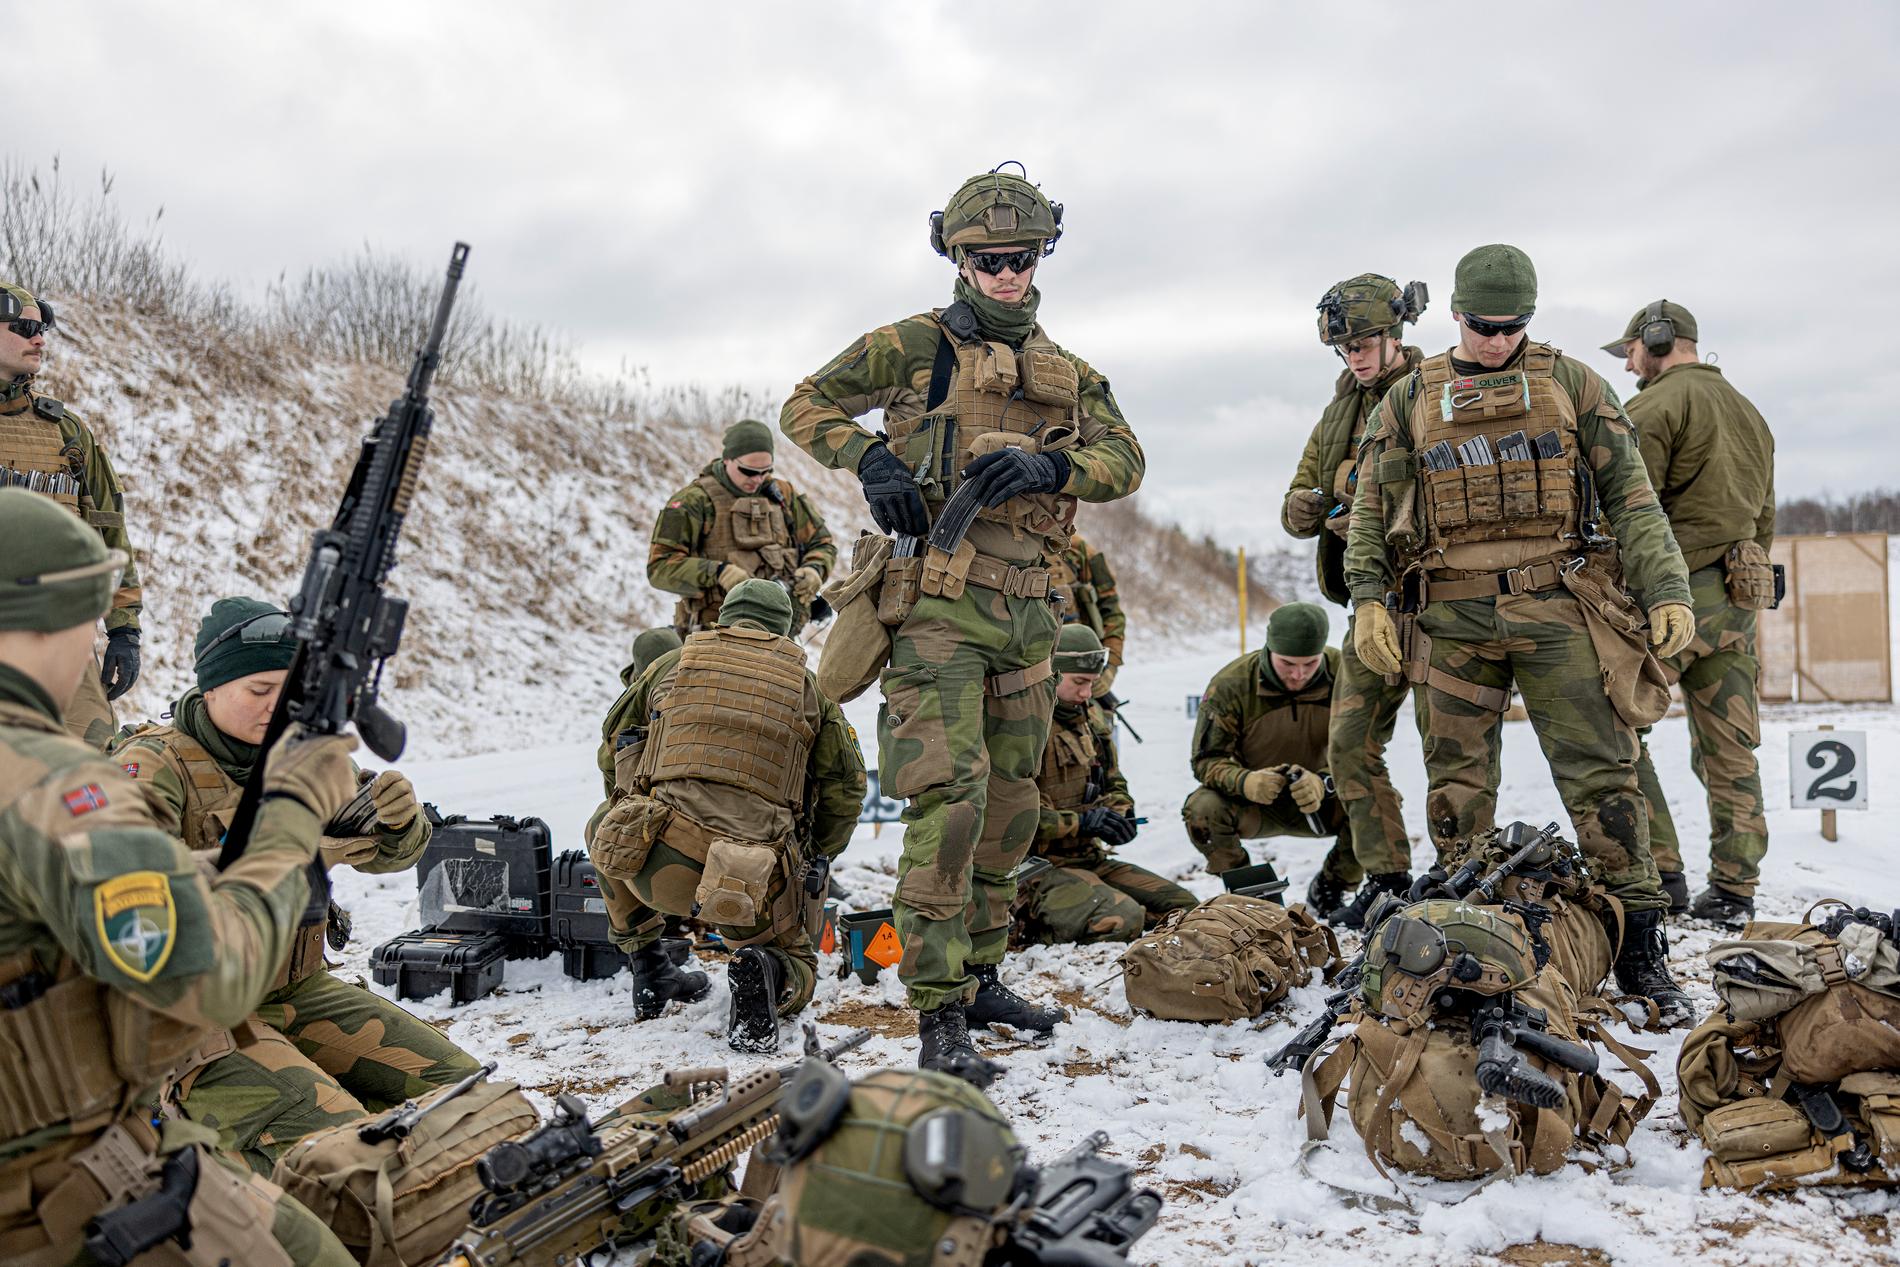 ”Nyligen besökte jag Litauen och Nato-soldater som placerats där som en signal till Ryssland att övriga Nato-länder är beredda att försvara Baltikum mot ett ryskt angrepp.”